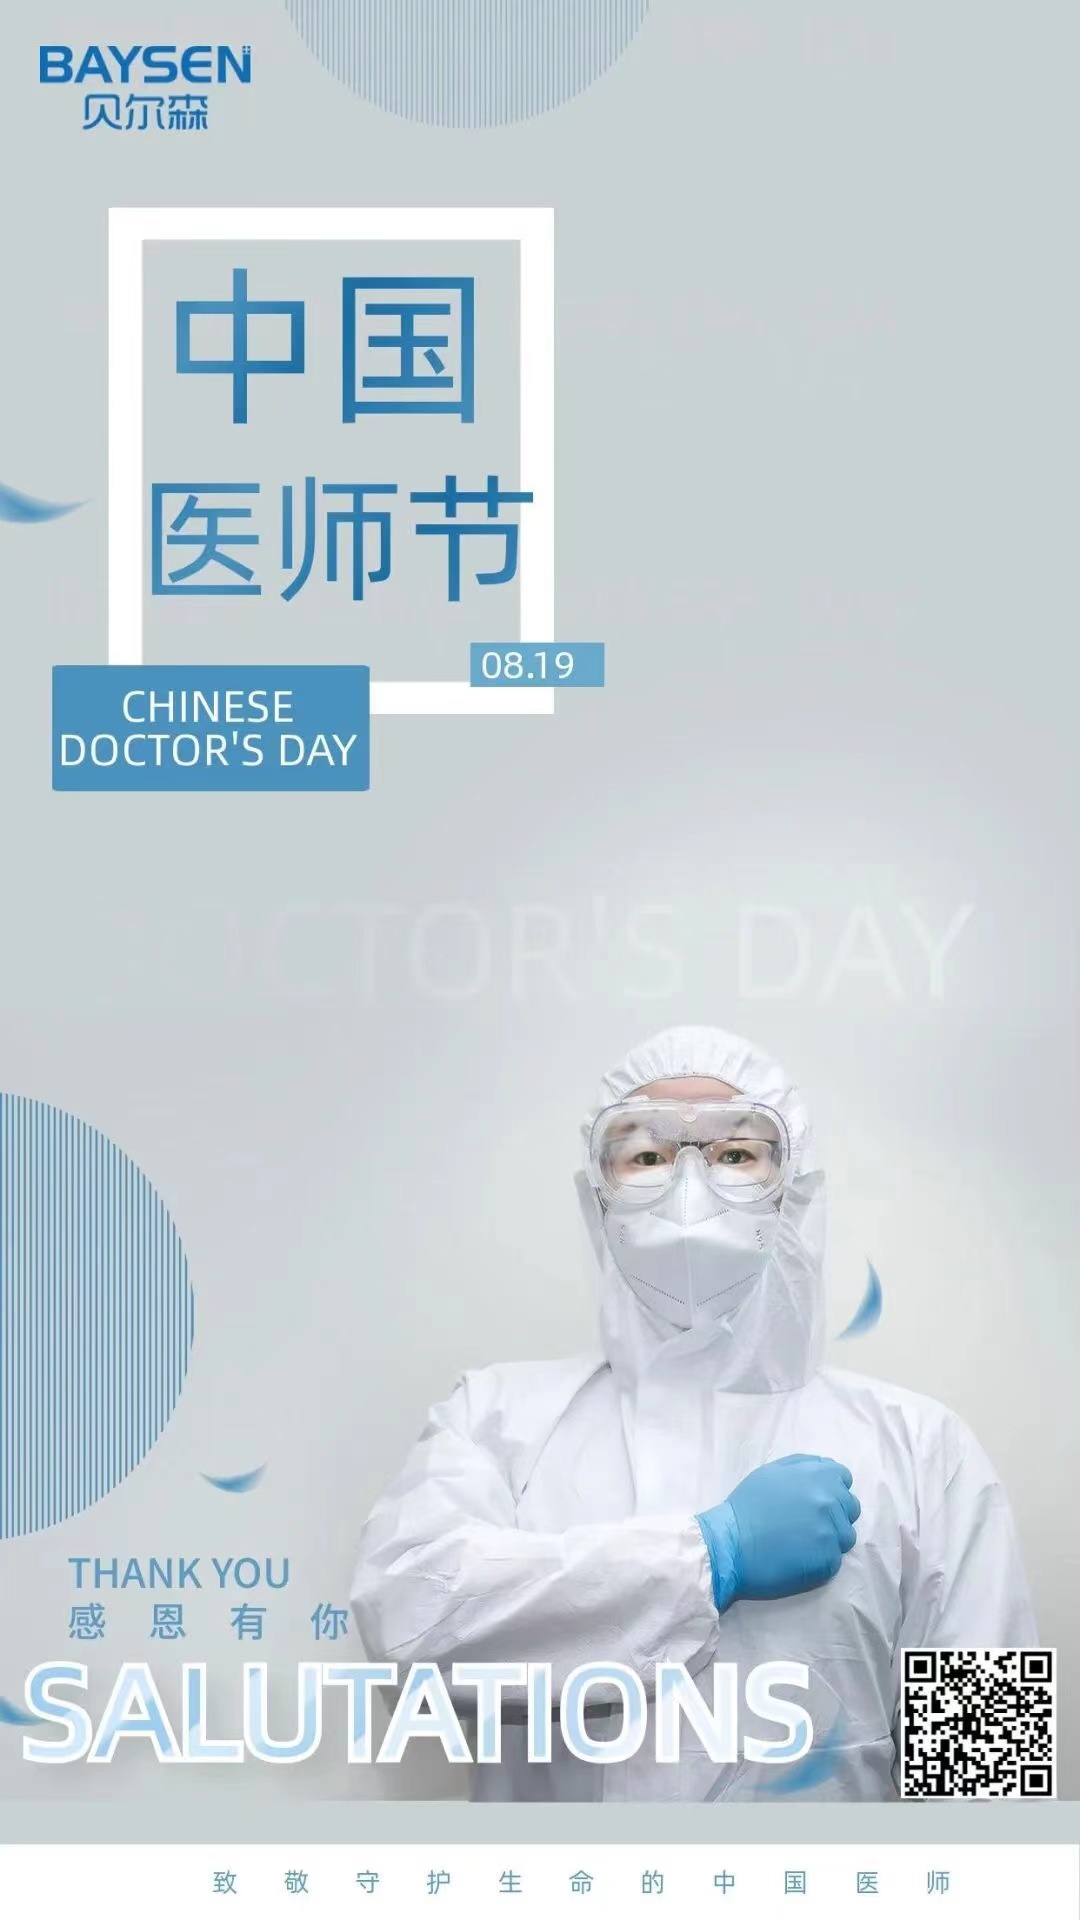 Hari Doktor Cina